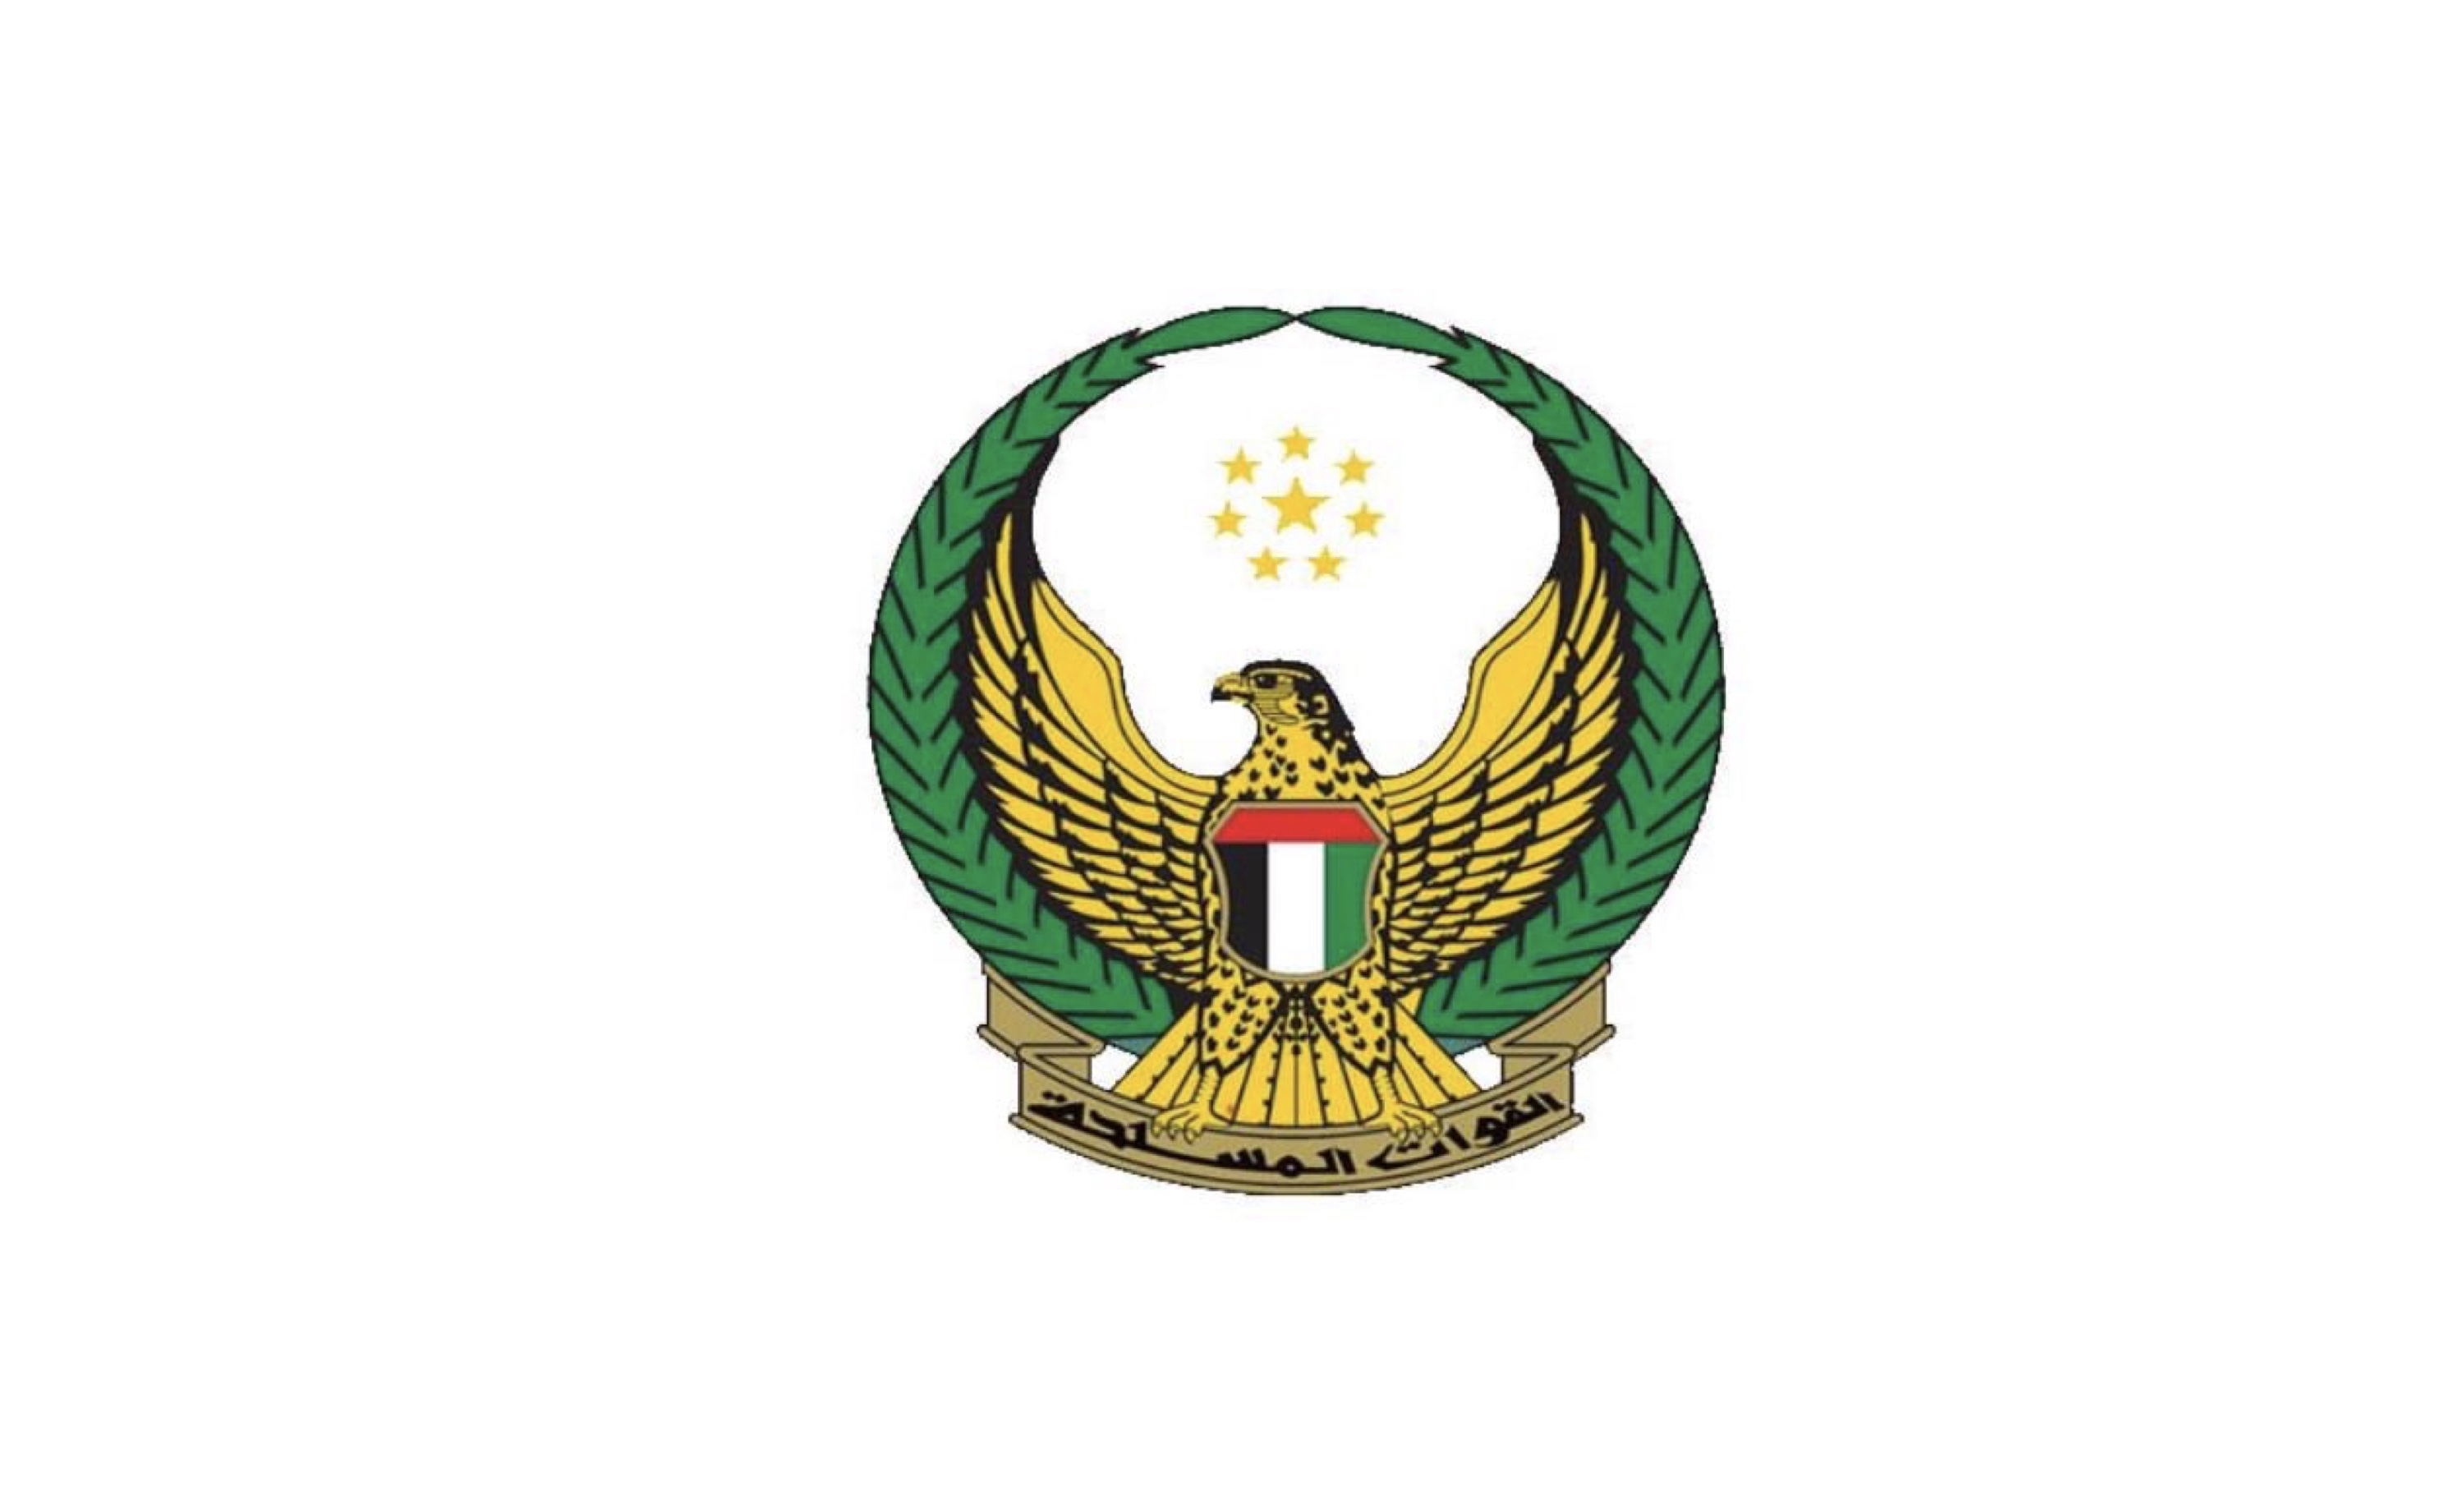 القيادة العامة للقوات المسلحة تعلن استشهاد العريف/1 طارق حسين حسن البلوشي